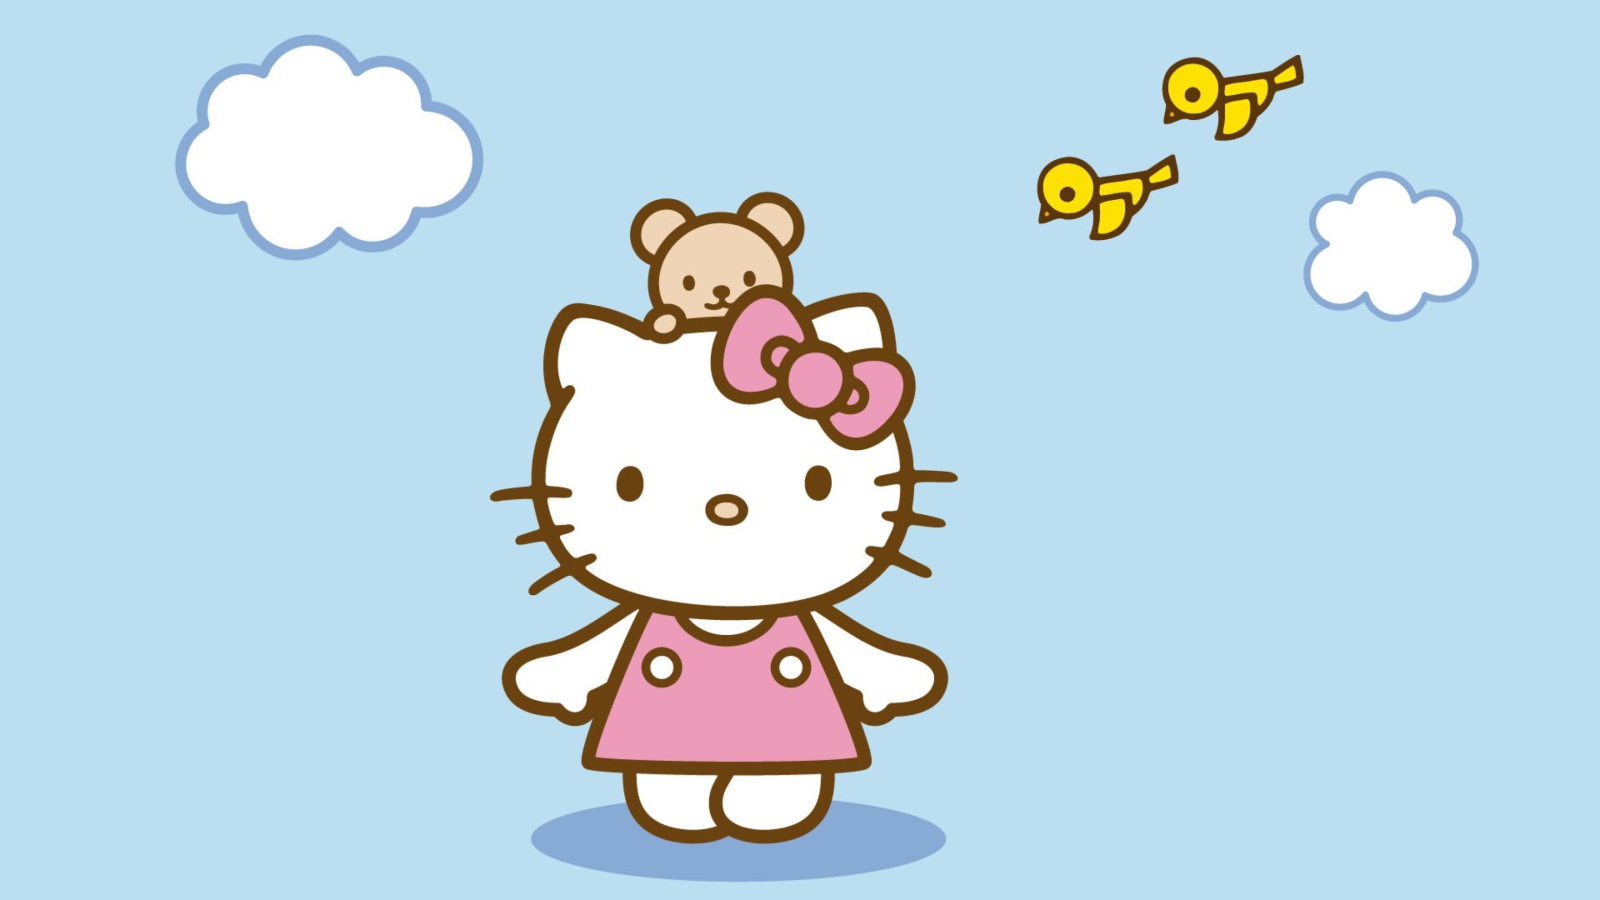 Обои Hello Kitty & Friend 1600x900